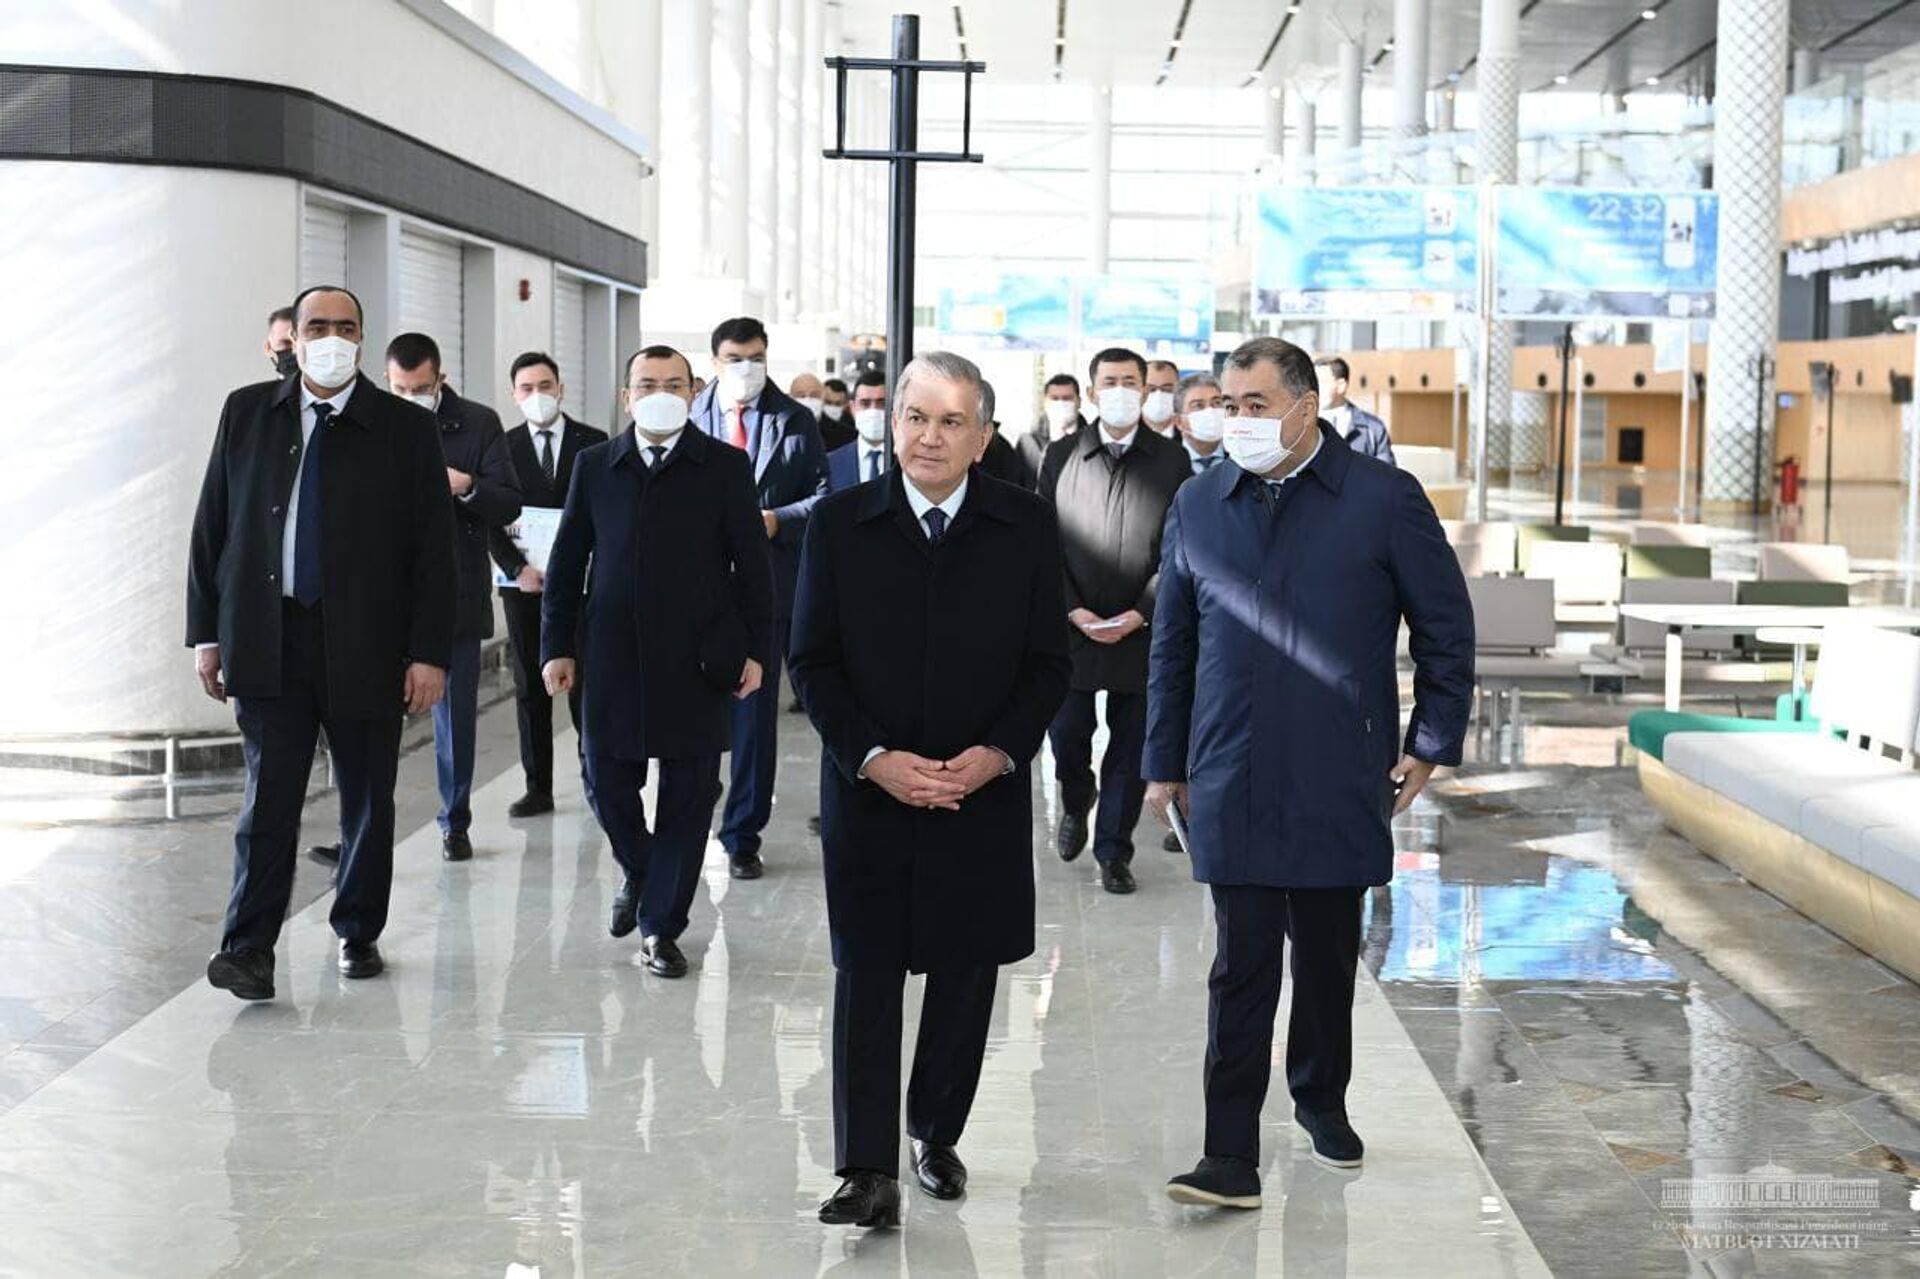 Шавкат Мирзиёев посетил международный аэропорт Самарканда - Sputnik Узбекистан, 1920, 11.02.2022